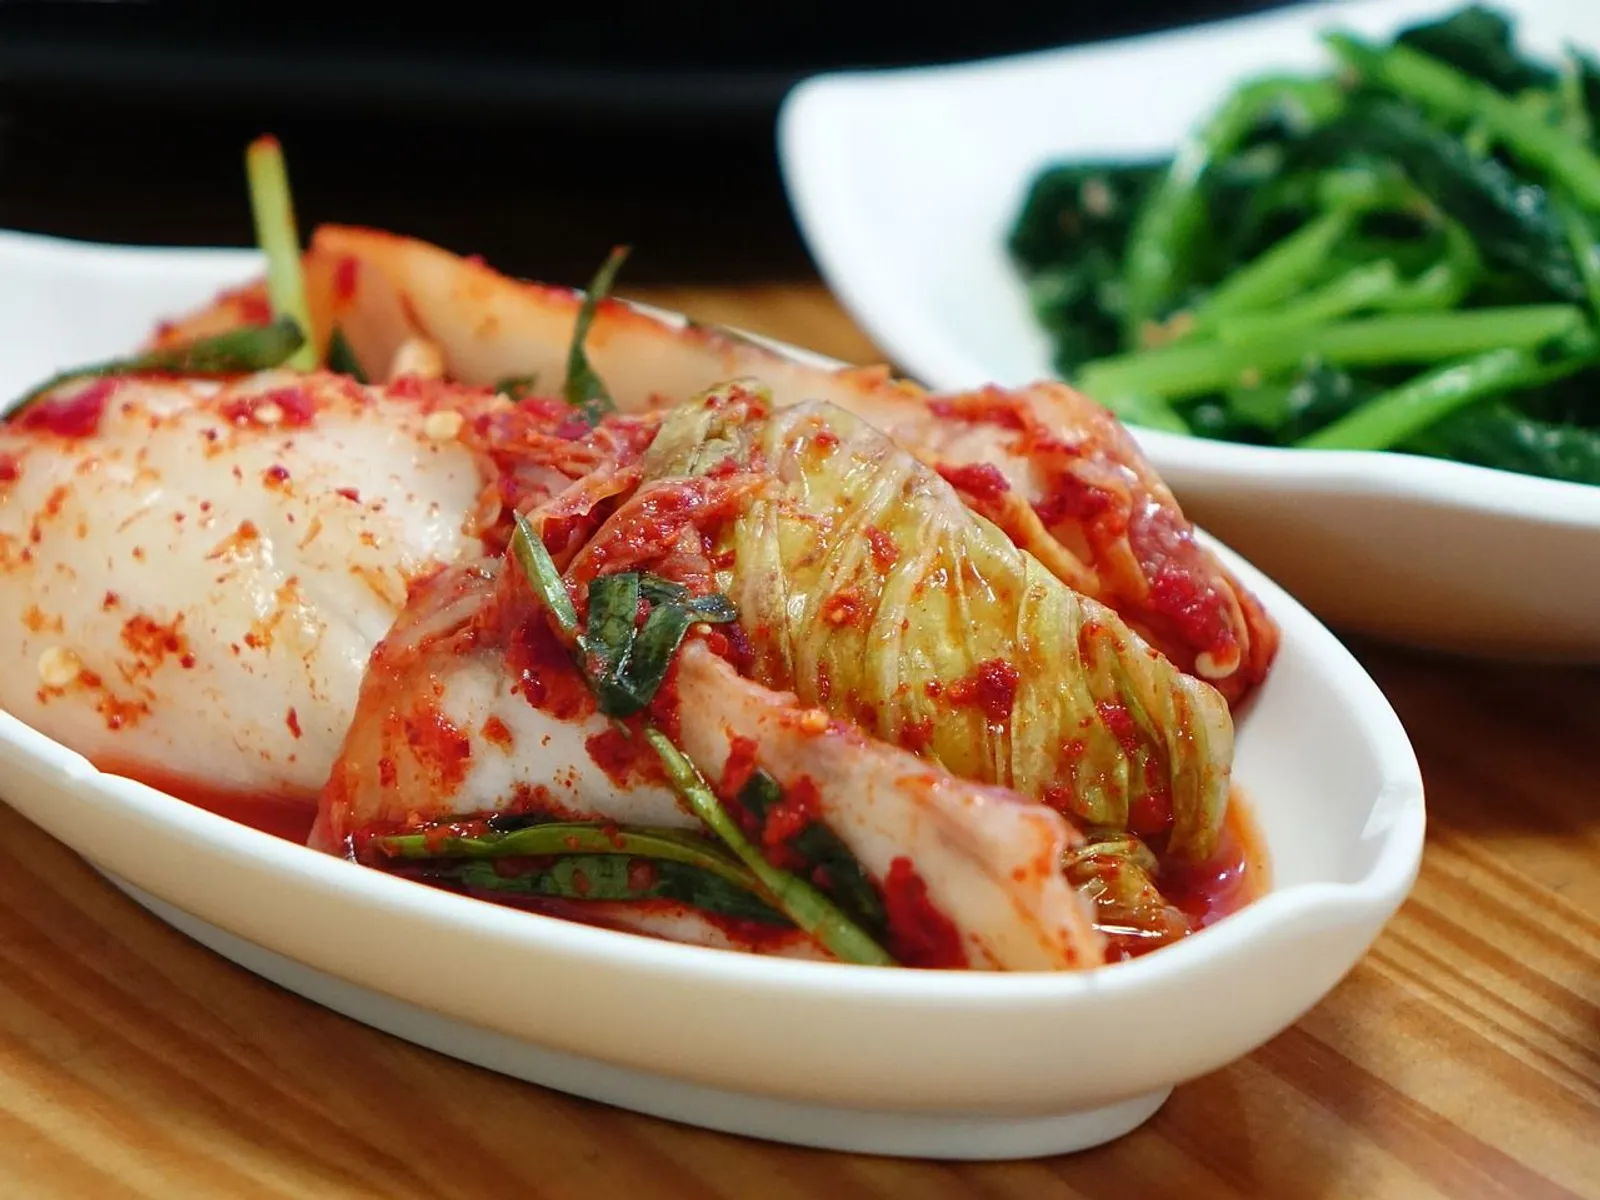 Kimchi Hingga Baby Kale, Ini 11 Superfood yang Tren di Tahun 2020